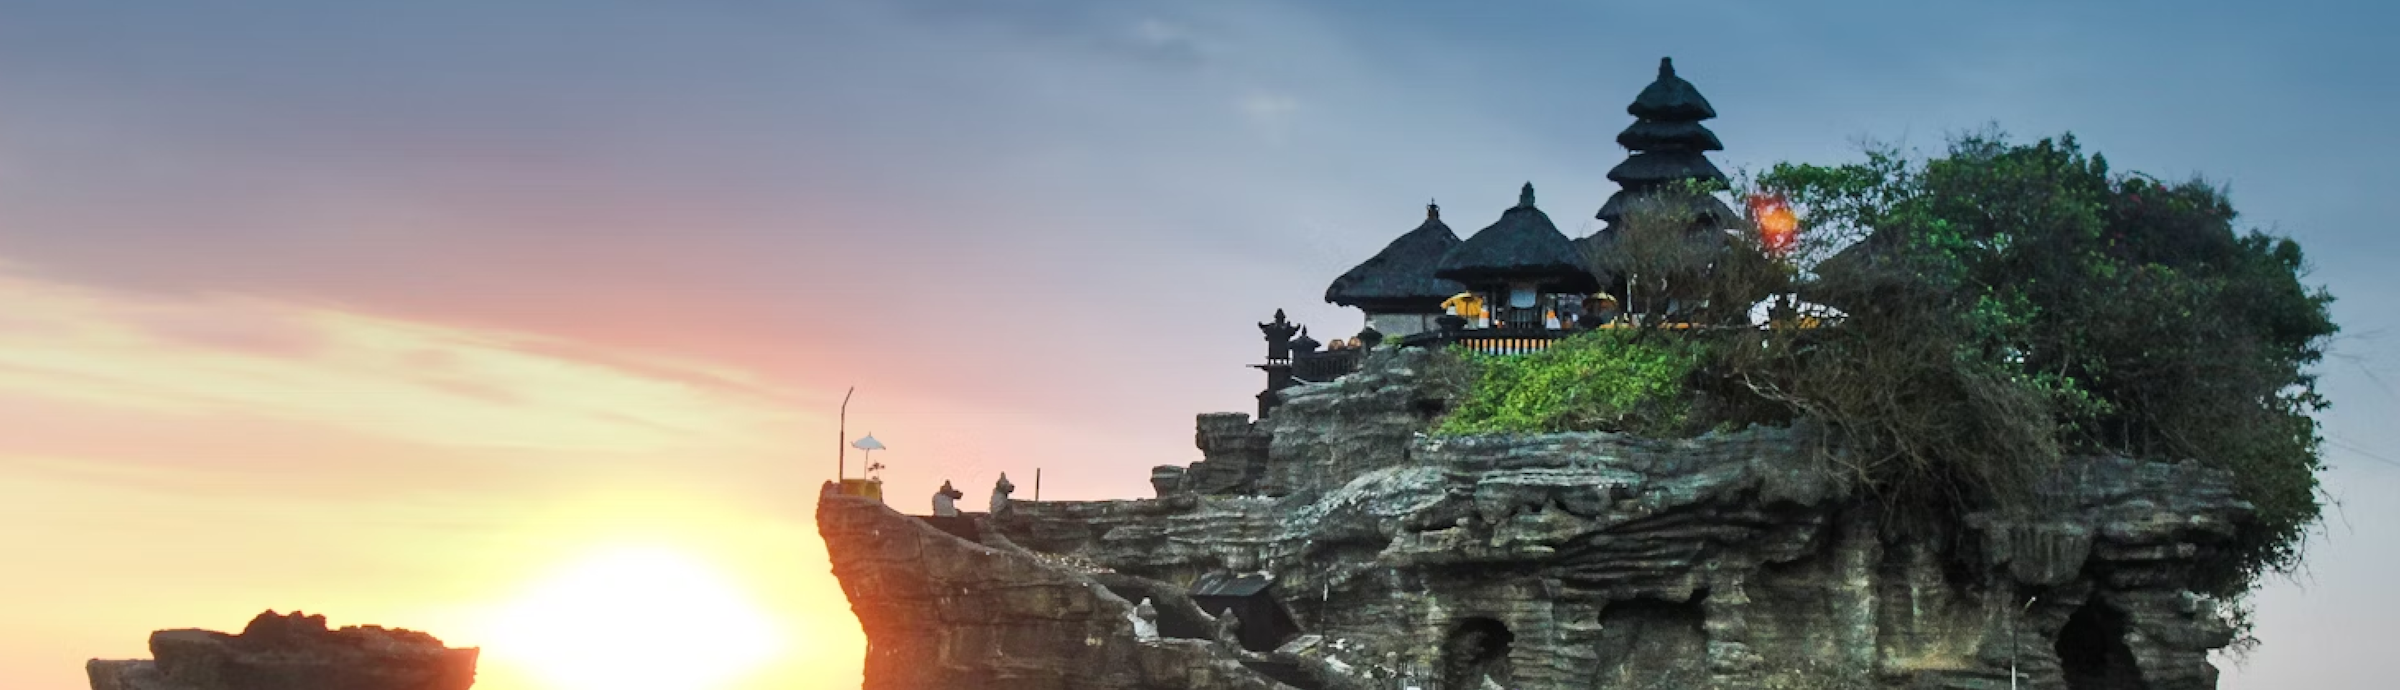 Bali Honeymoon Packages